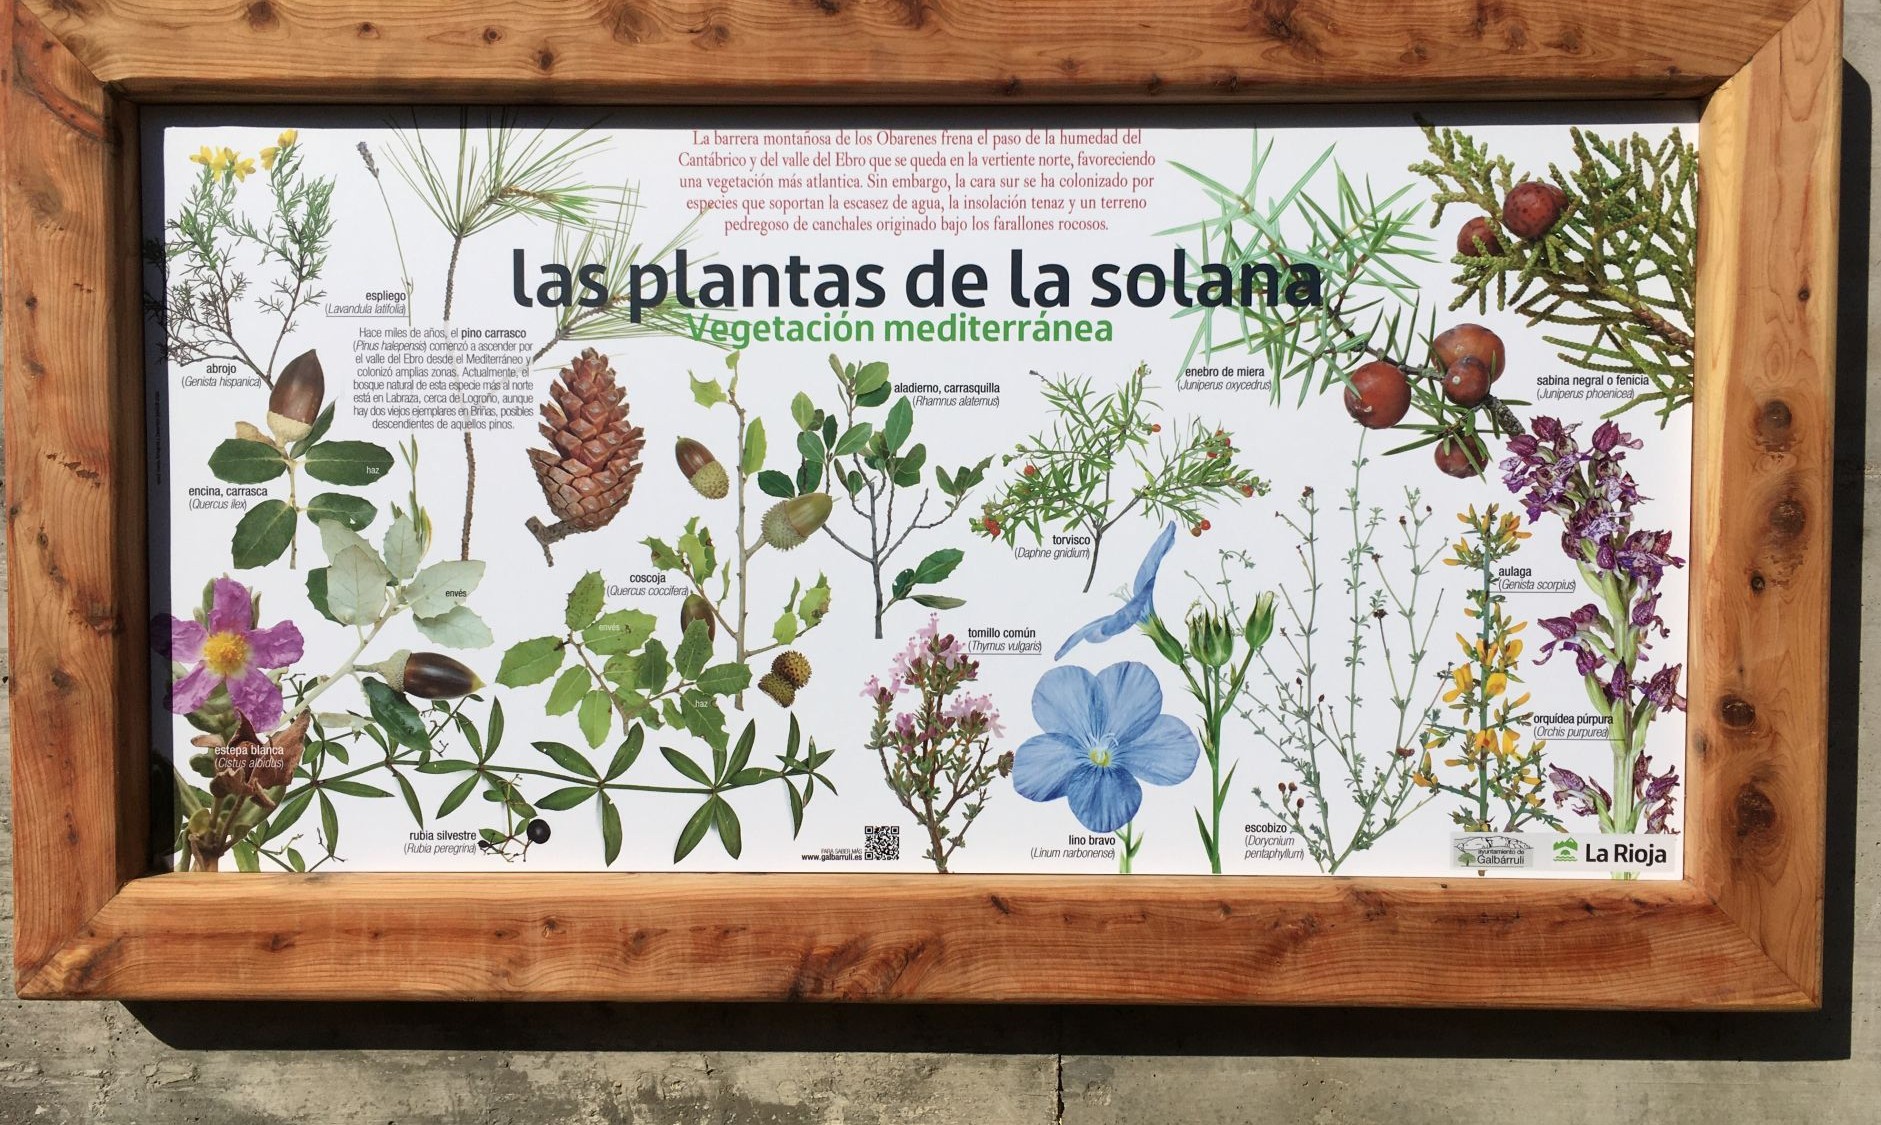  Cartel de la jardinera que encontraréis en Galbárruli con plantas mediterráneas.